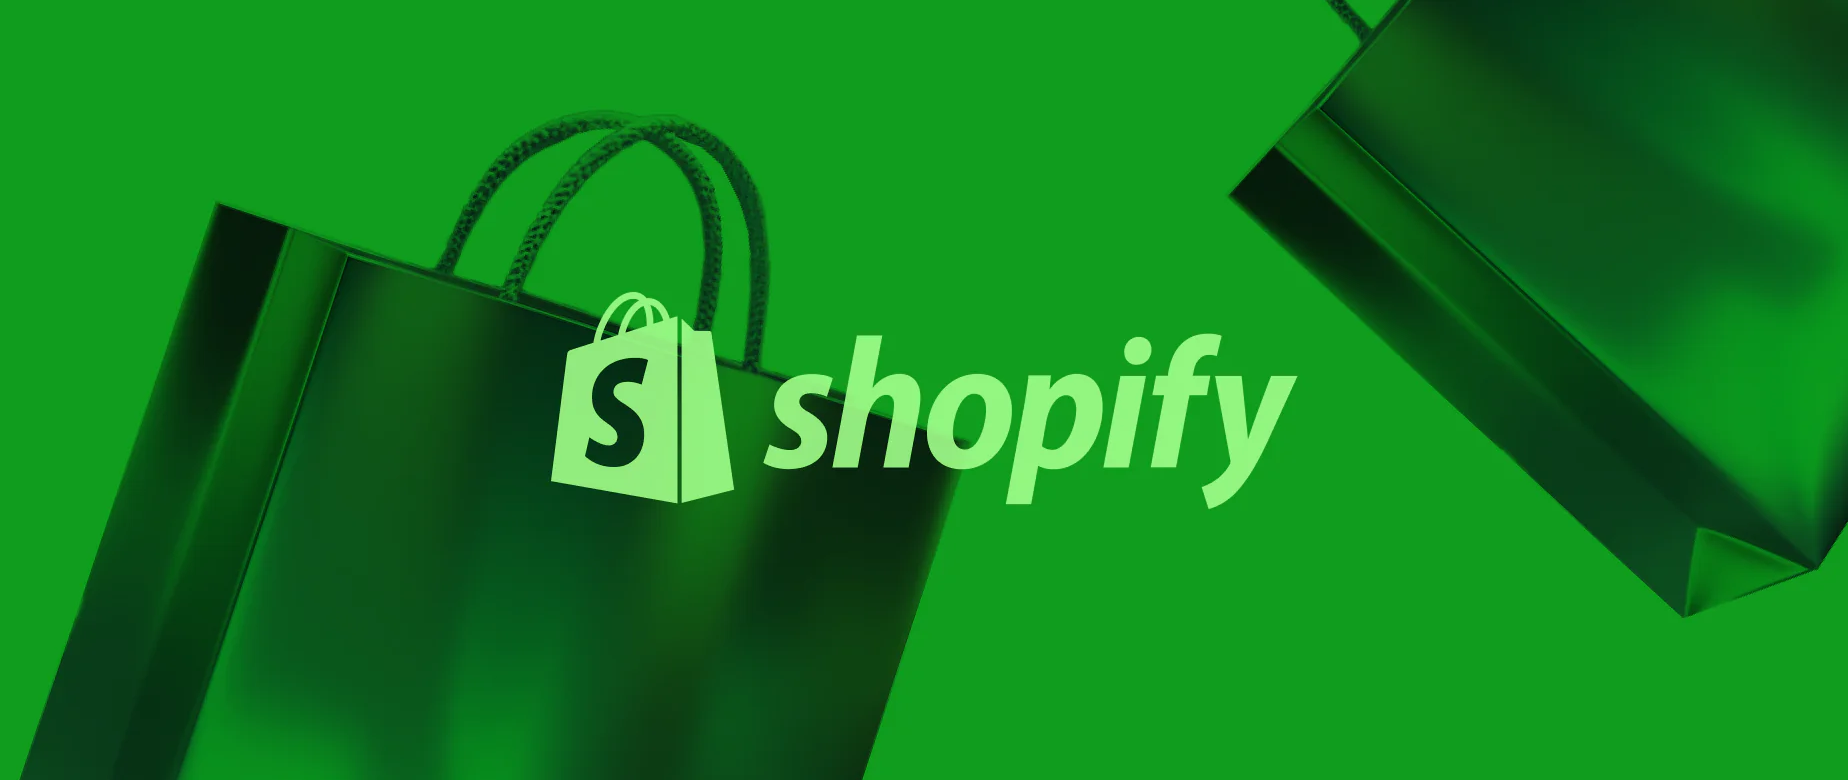 당신을 위해 영감을 주는 최고의 Shopify 스토어 50+